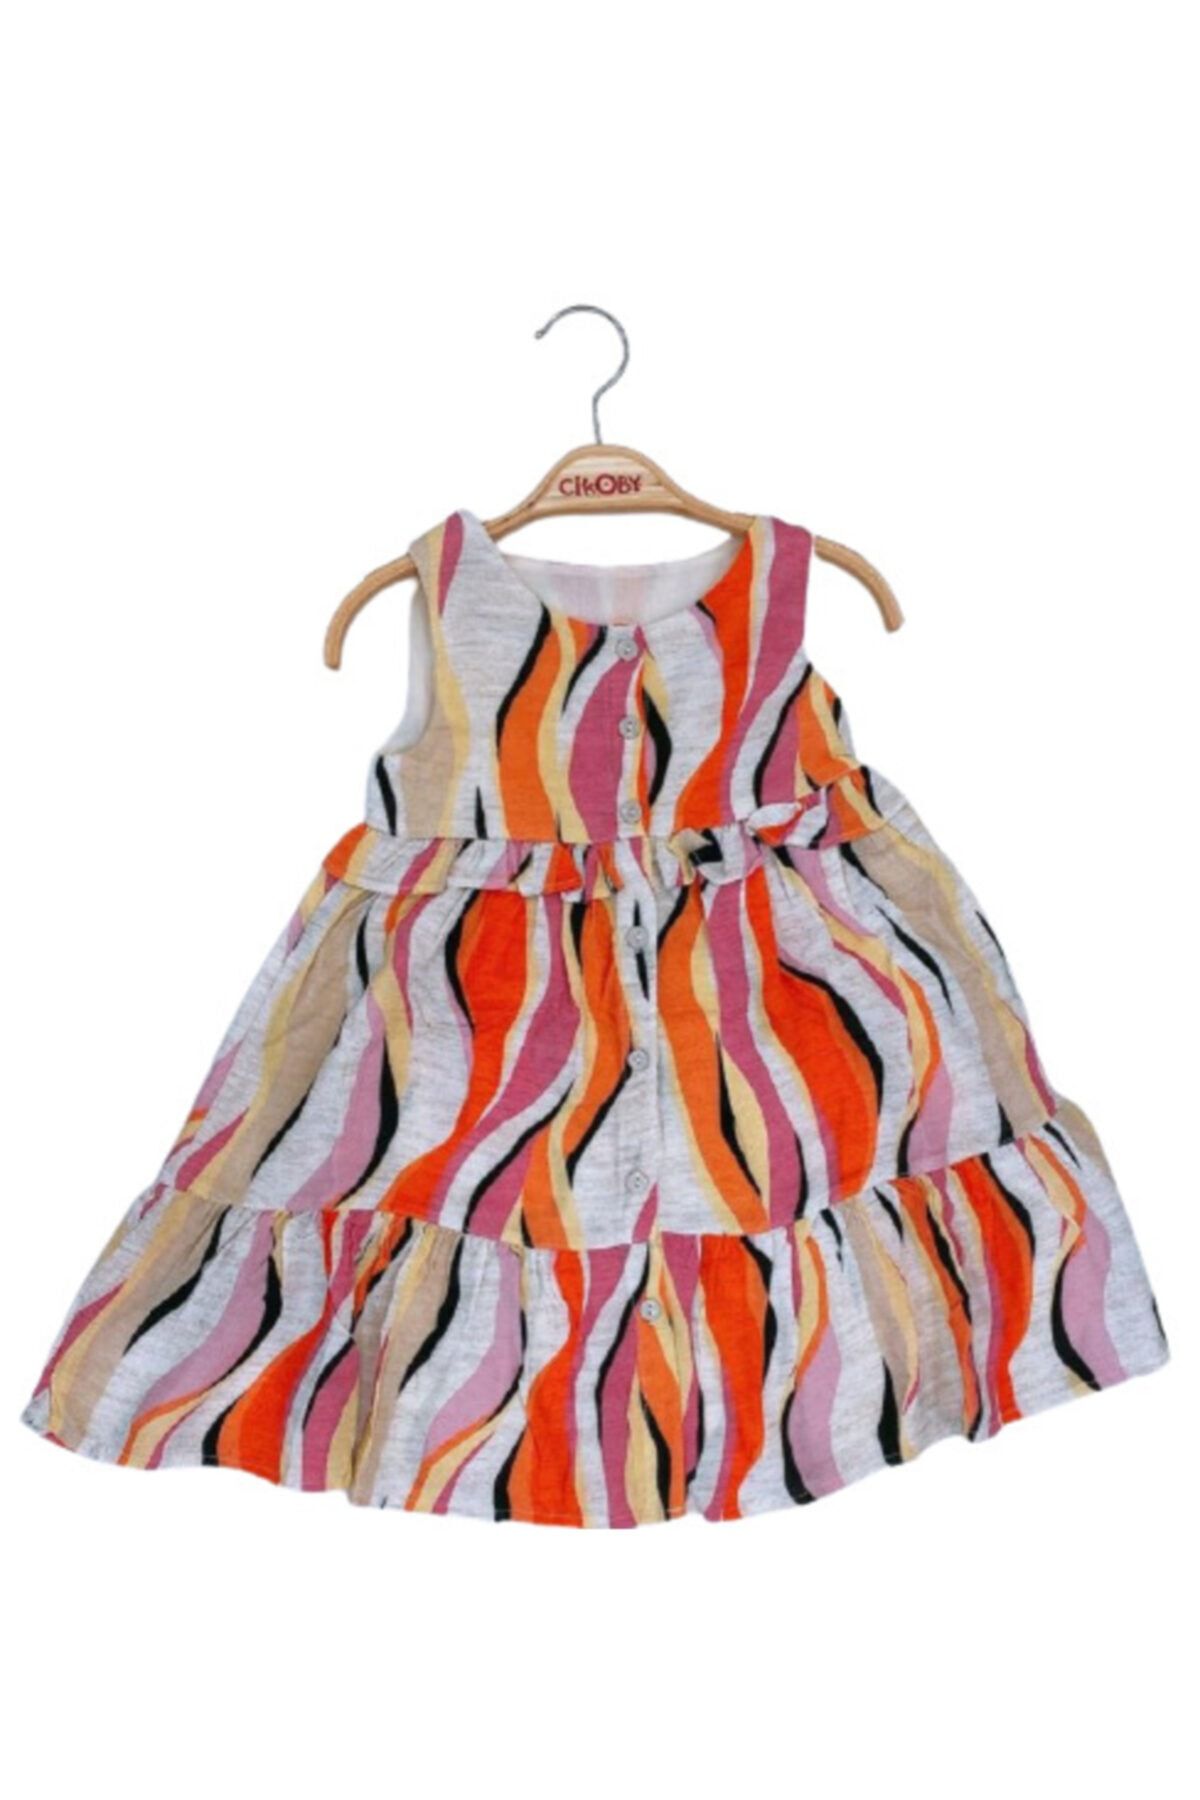 çikoby Kız Çocuk Desenli Düğmeli Fırfırlı Renkli Elbise